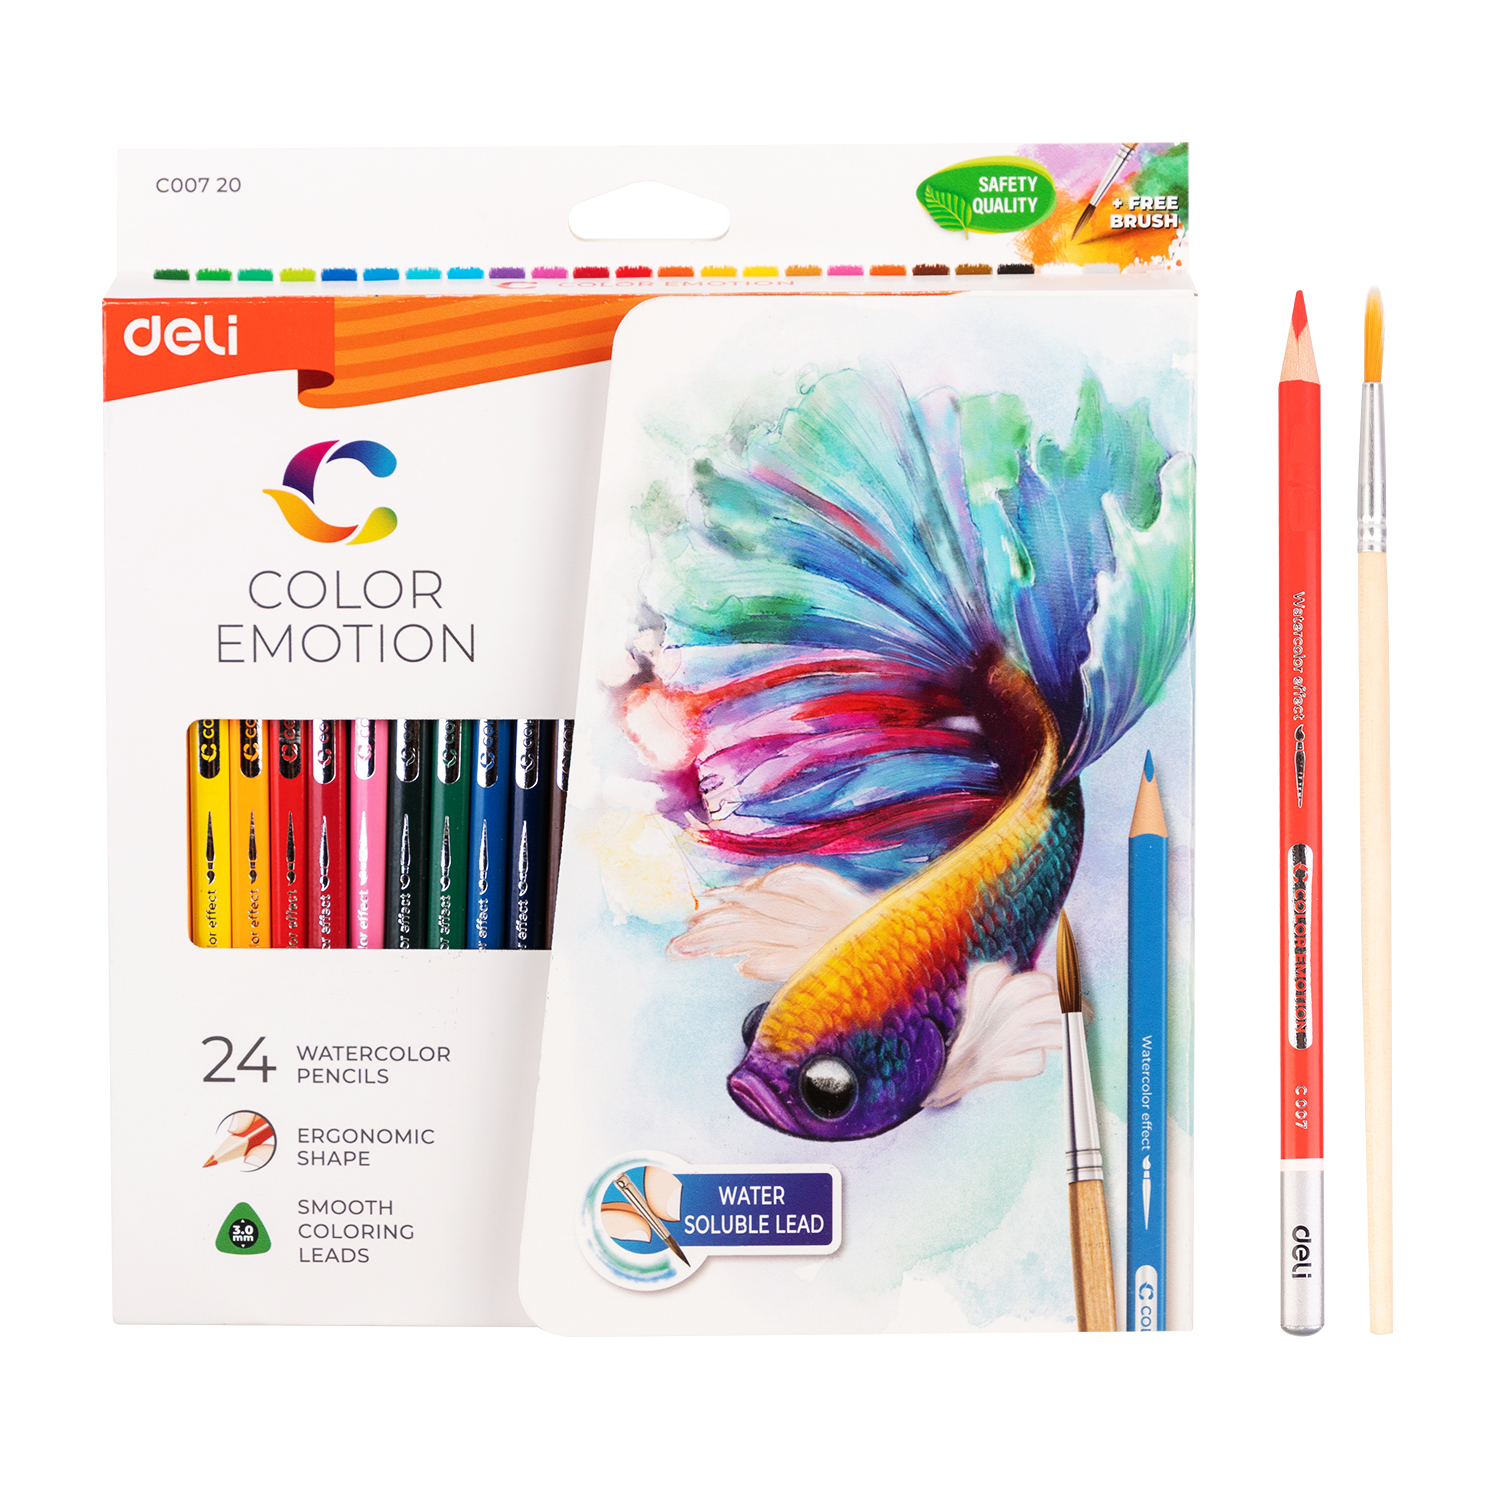 Deli-EC00720 Water Colored Pencil